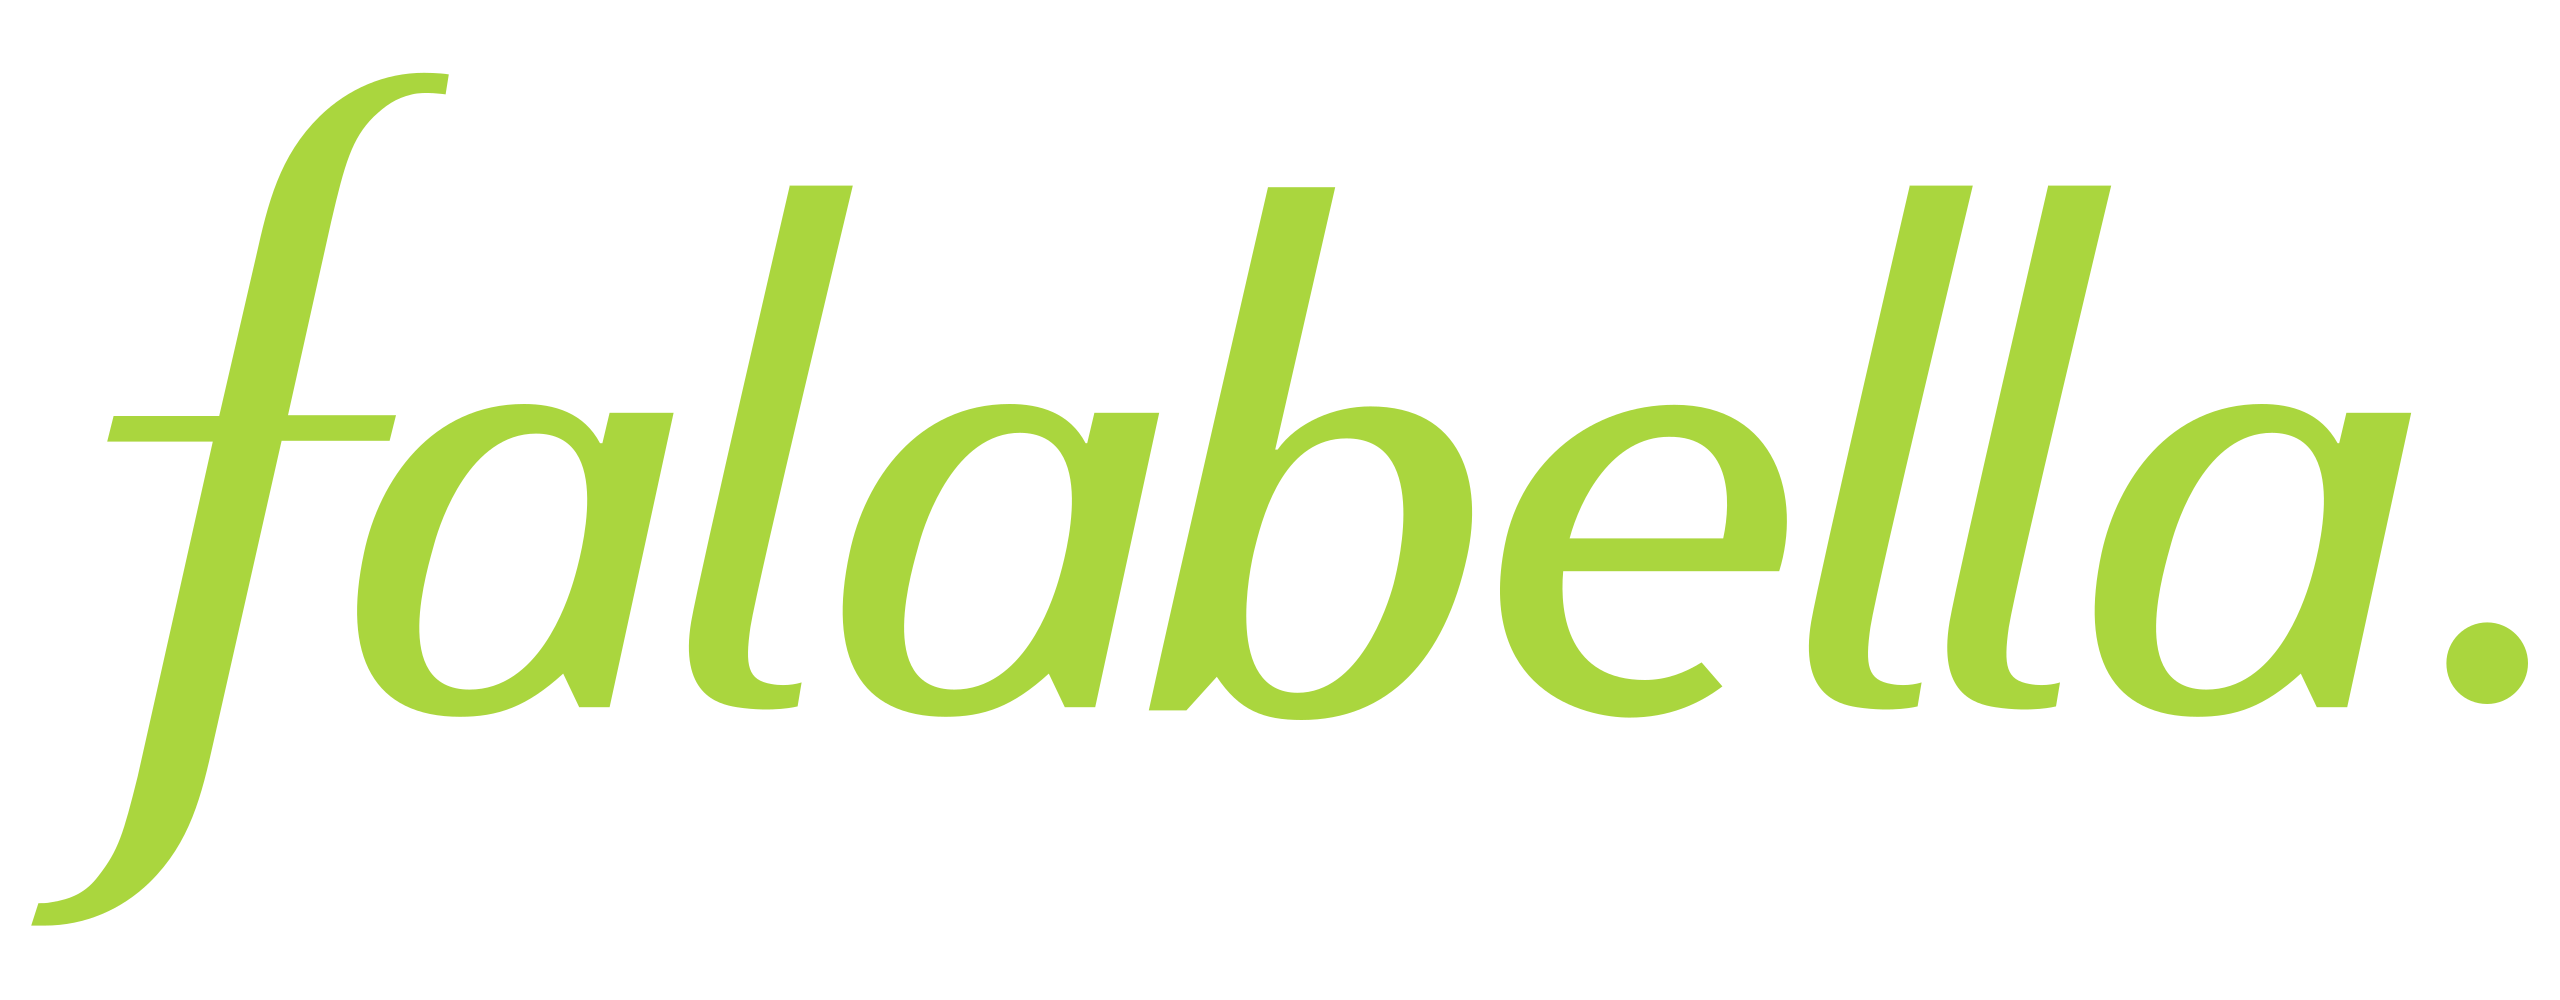 Falabella_logo